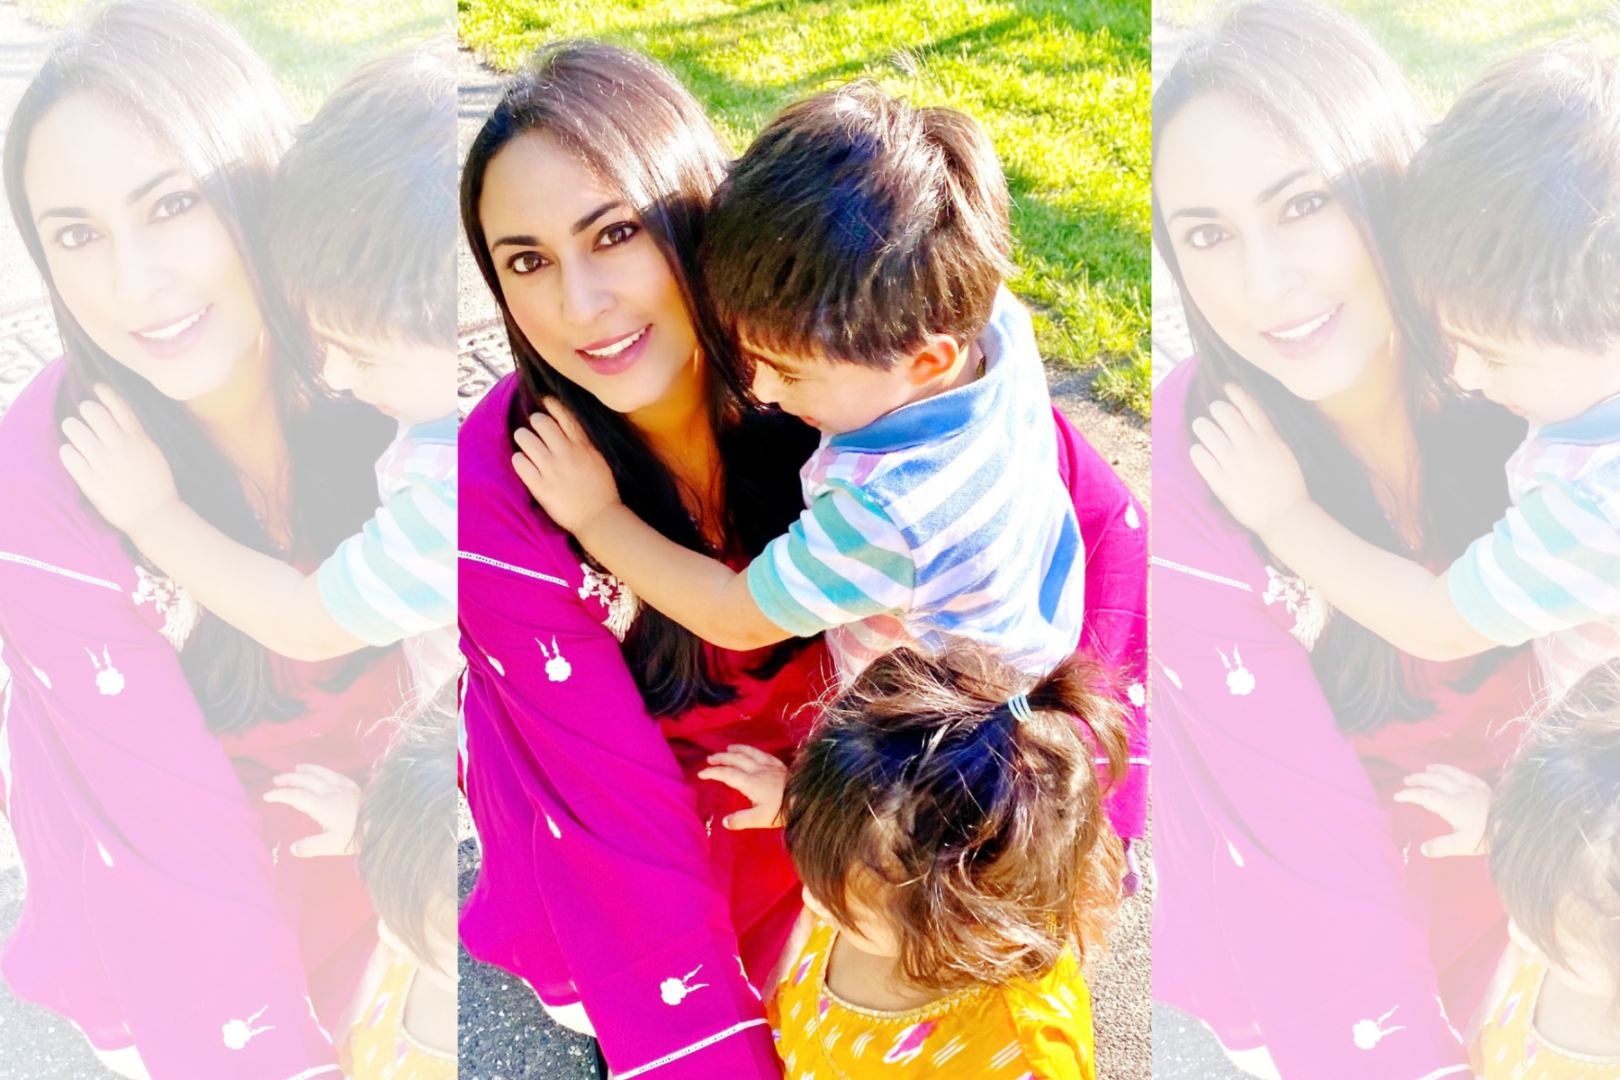 New York City mom creating everlasting Ramadan memories with her children